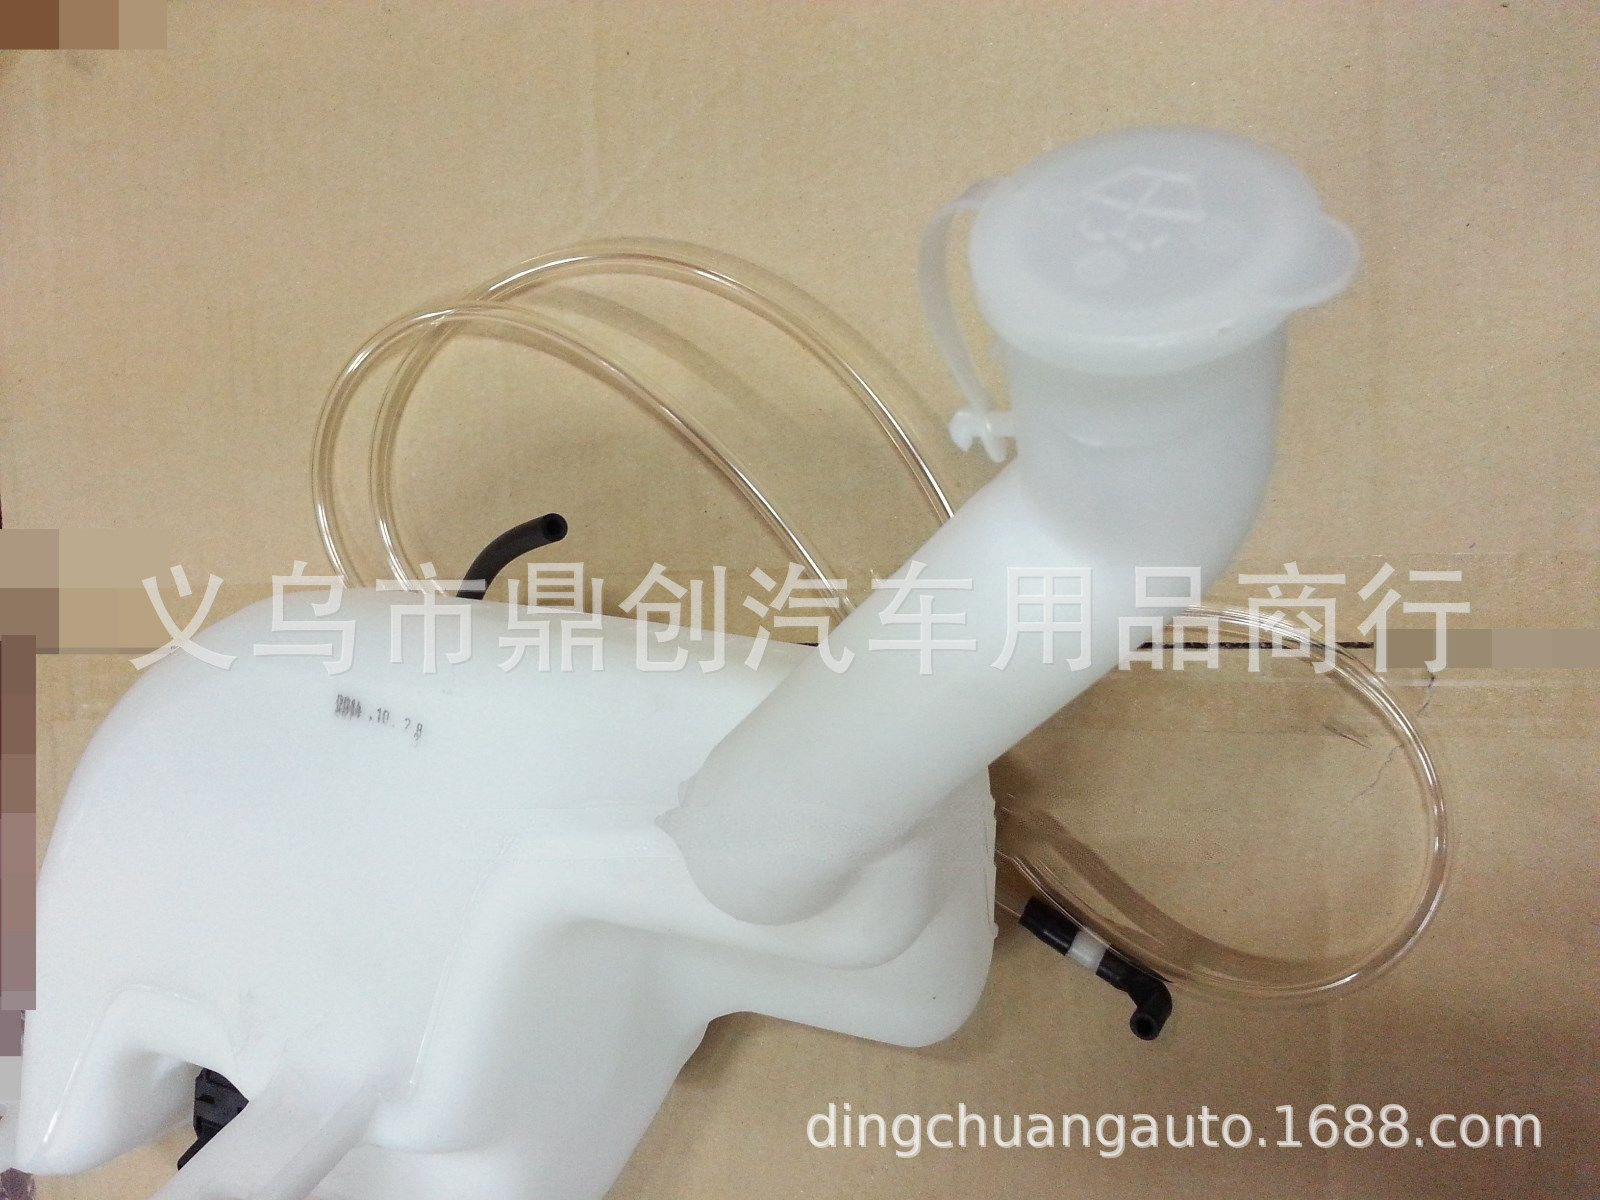 双龙面包MB100上海汇众伊思坦纳前后雨刮器雨刷器喷水壶玻璃水壶